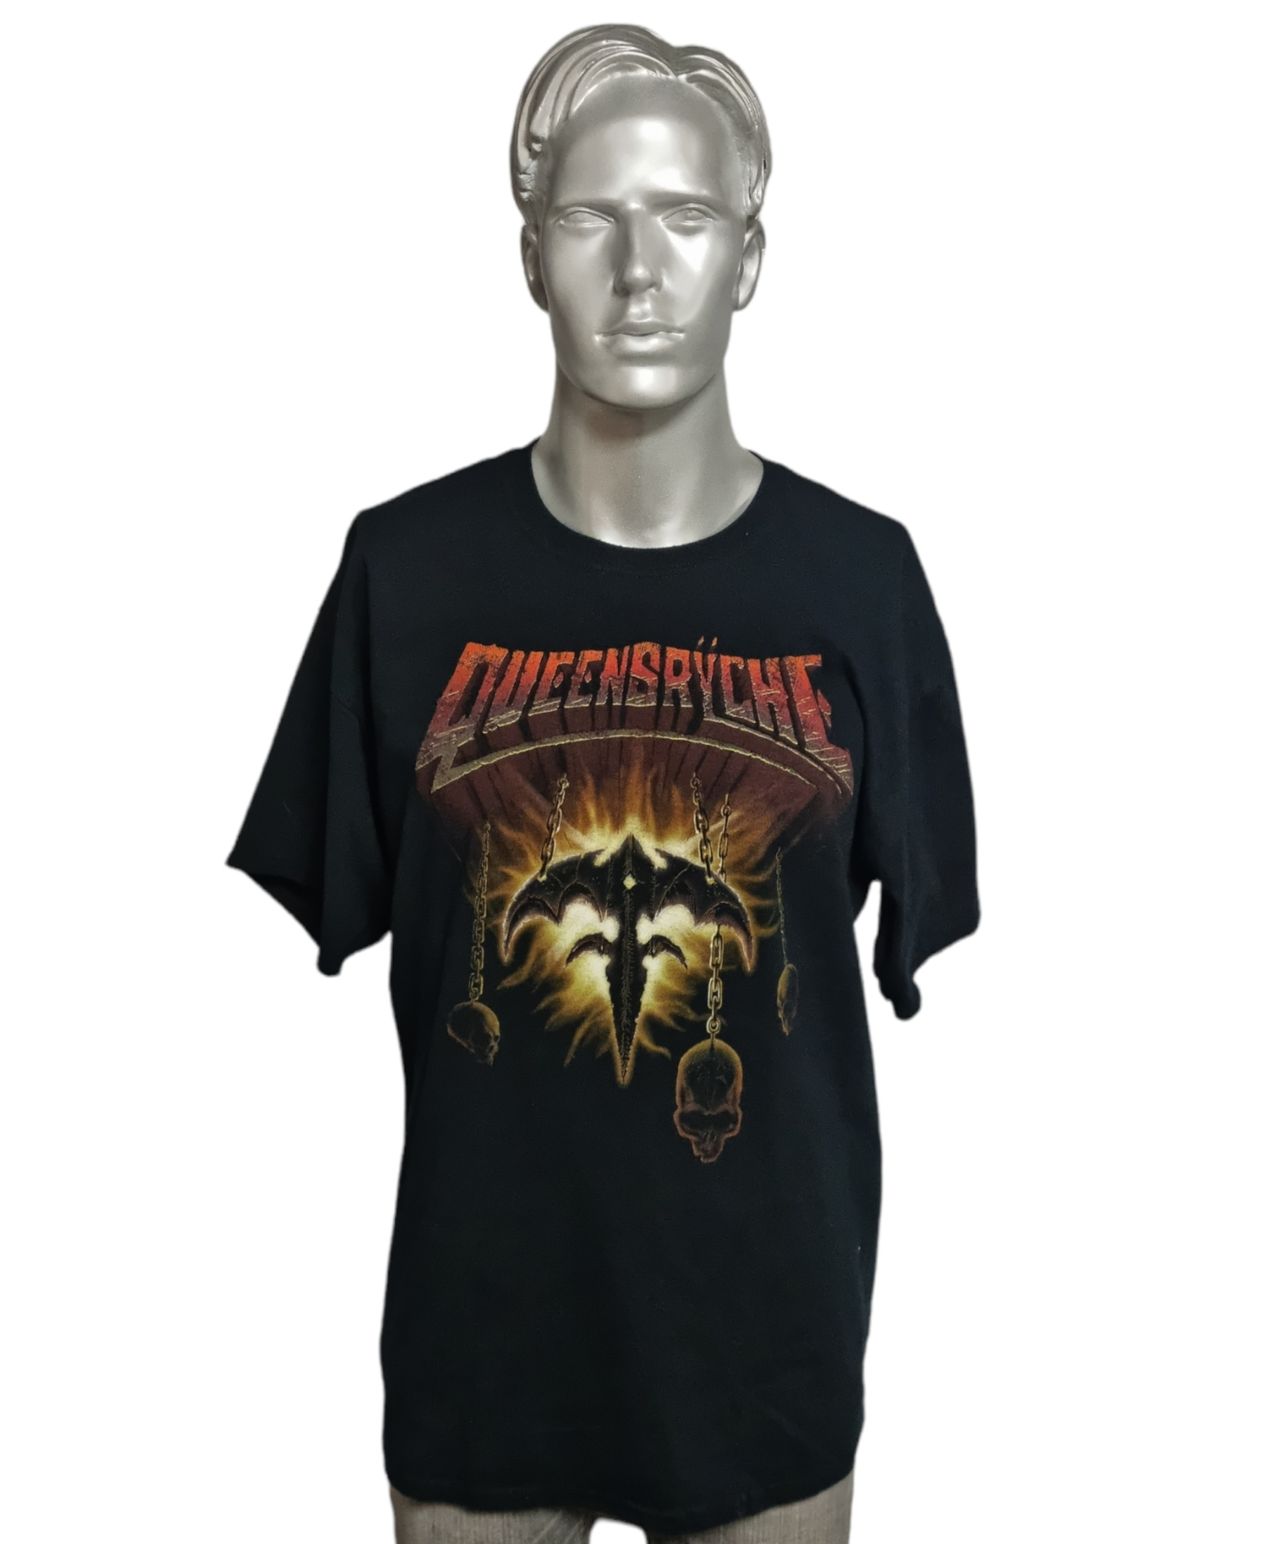 Queensryche World Tour UK t-shirt